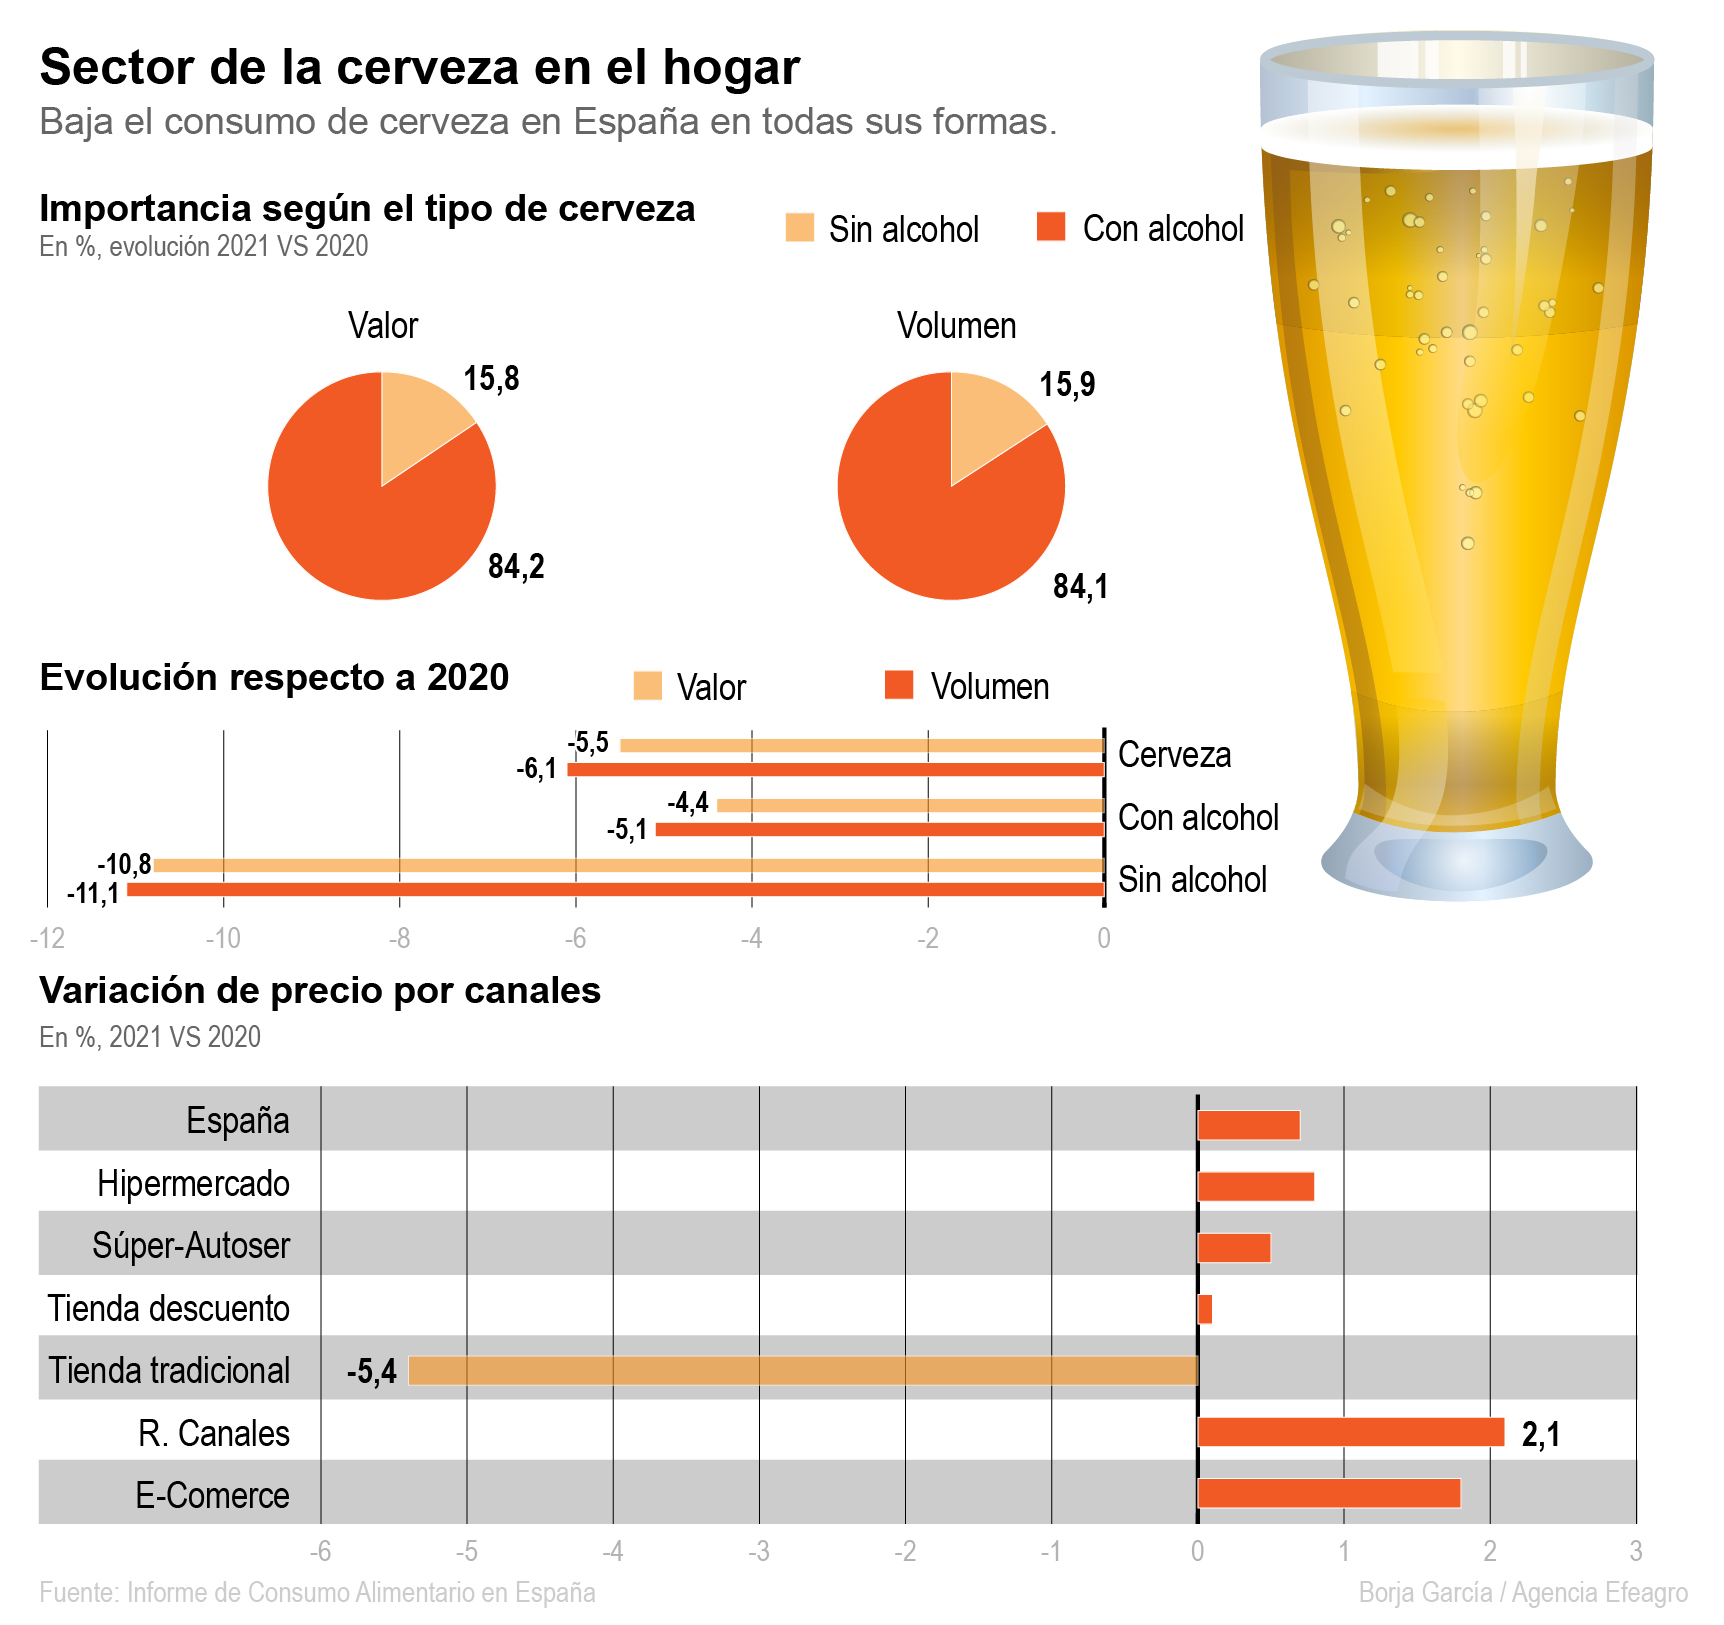 Consumo de cerveza en el hogar en España. Fuente: MAPA. Efeagro/Borja García